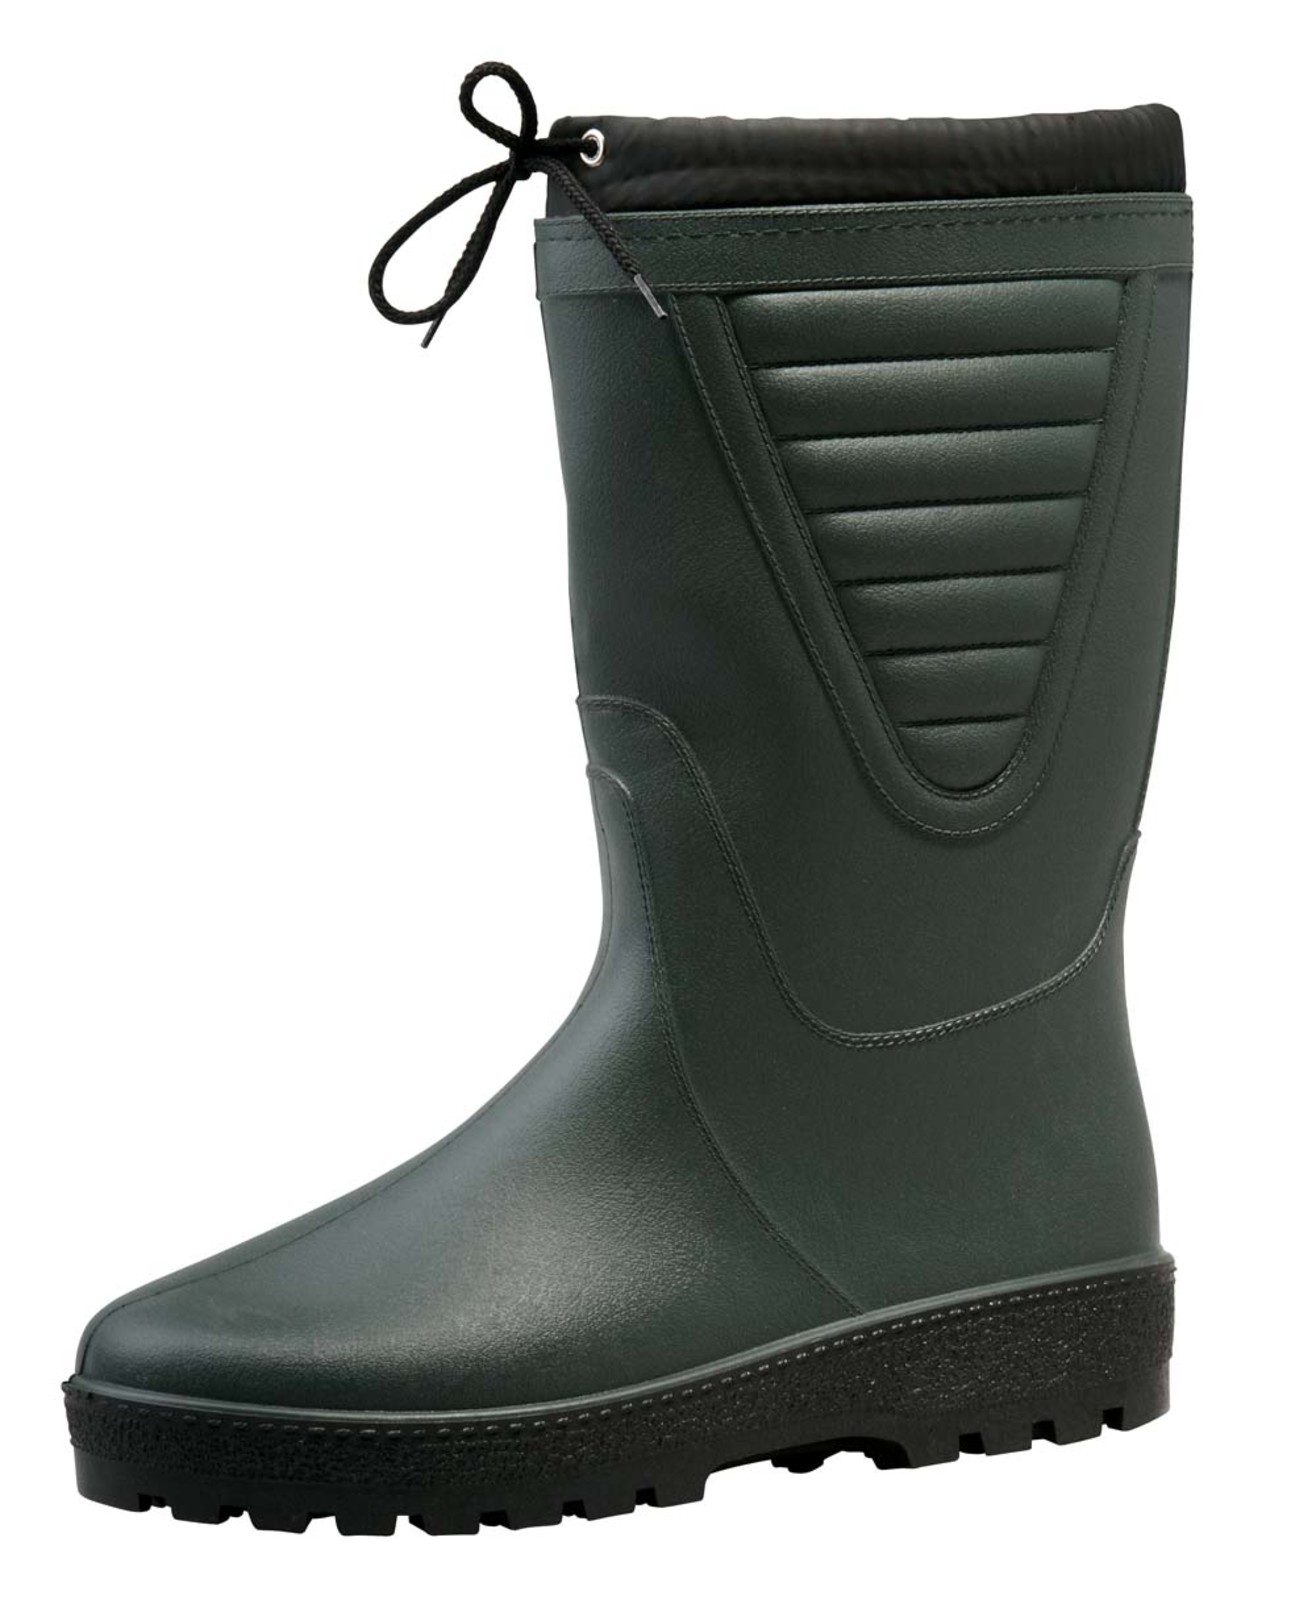 Zateplené čižmy Boots Polar - veľkosť: 45, farba: zelená